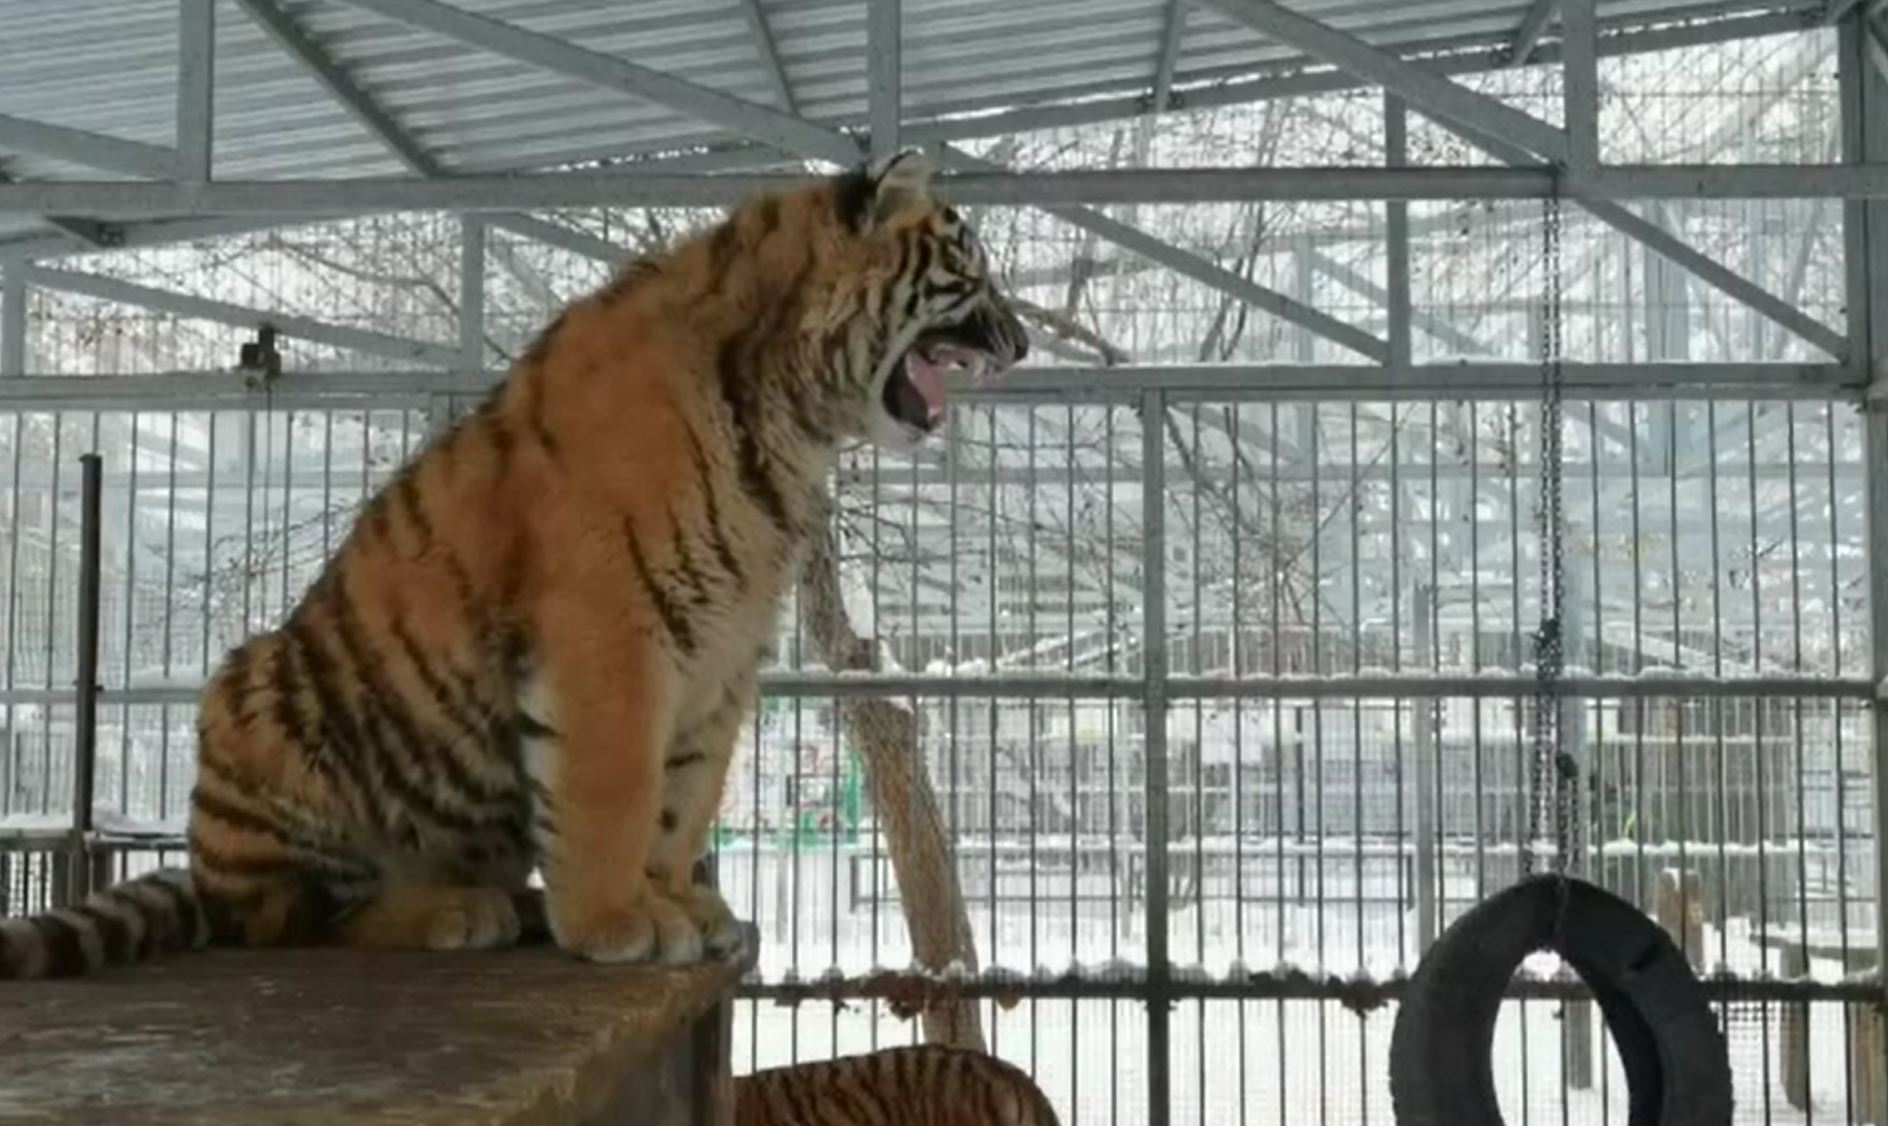 Spectacol oferit de un tigru de la o grădină zoo din Siberia, care a început să cânte